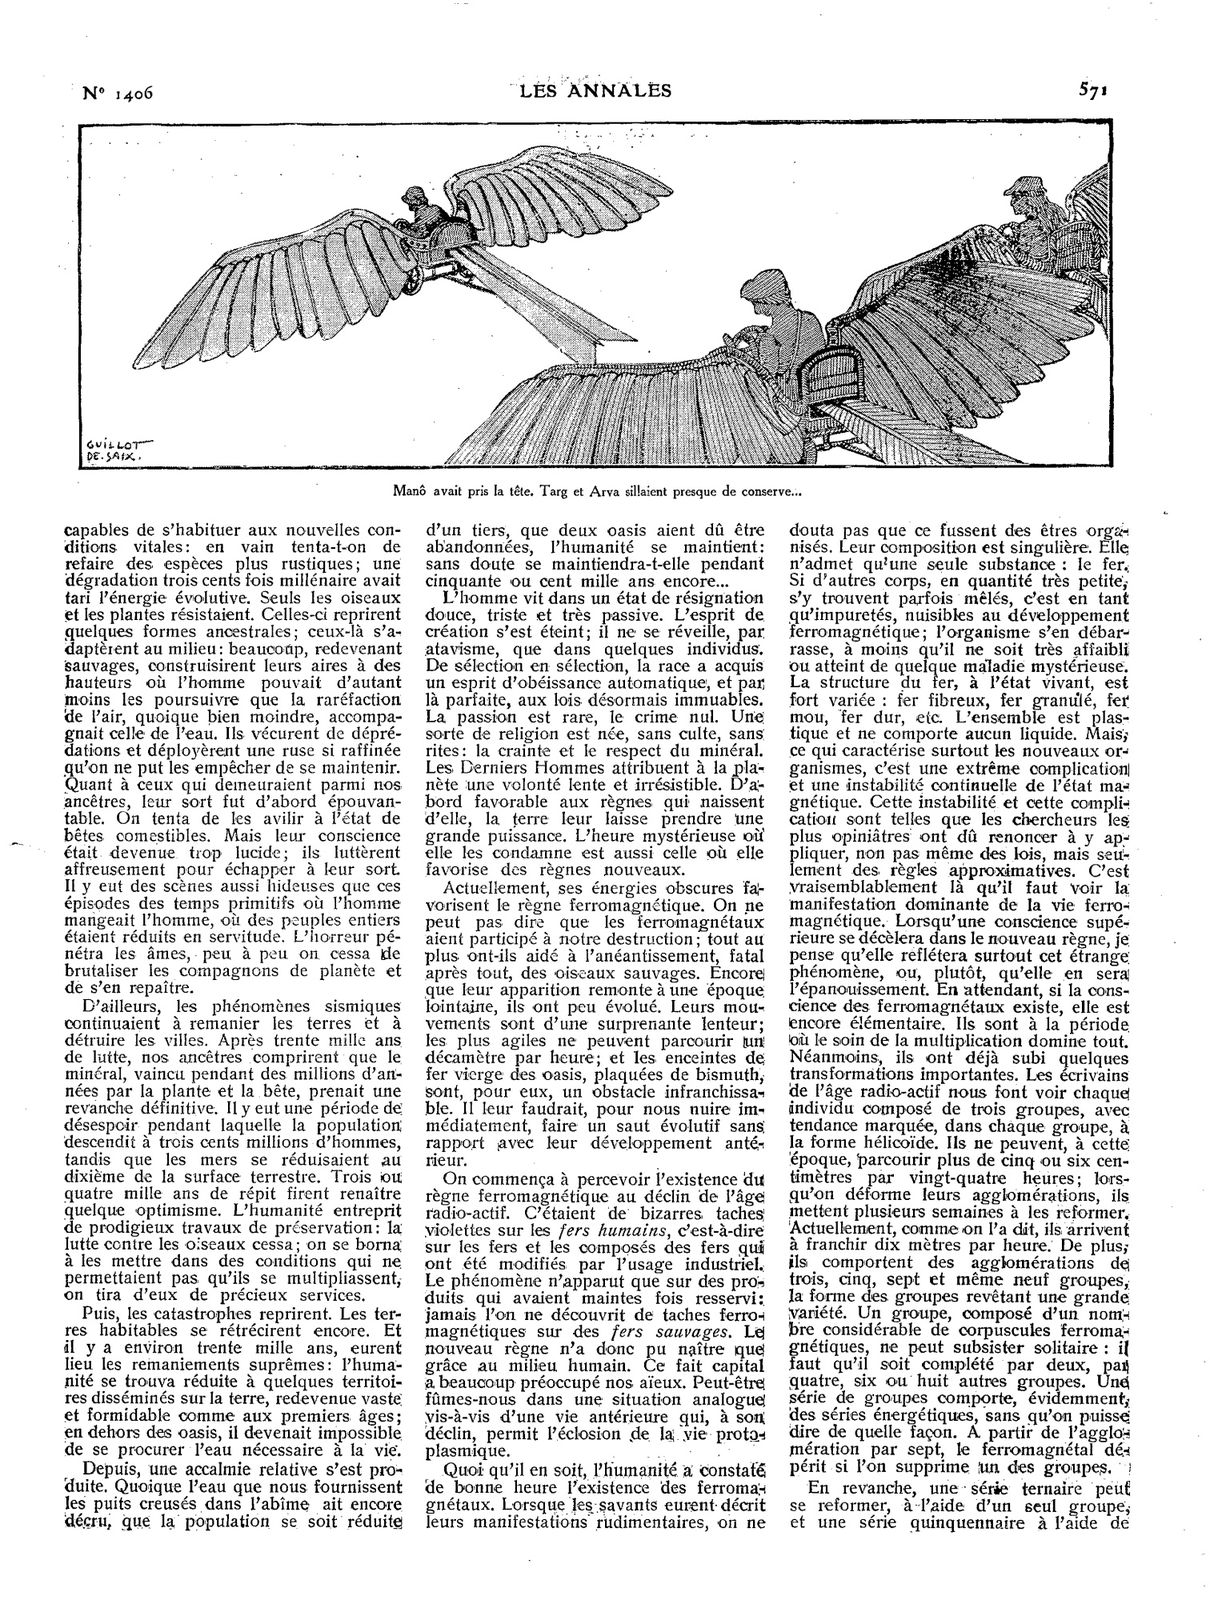 J.-H. Rosny aîné "La Mort de la Terre" in Les Annales politiques et littéraires n°1406 du 5 juin 1910